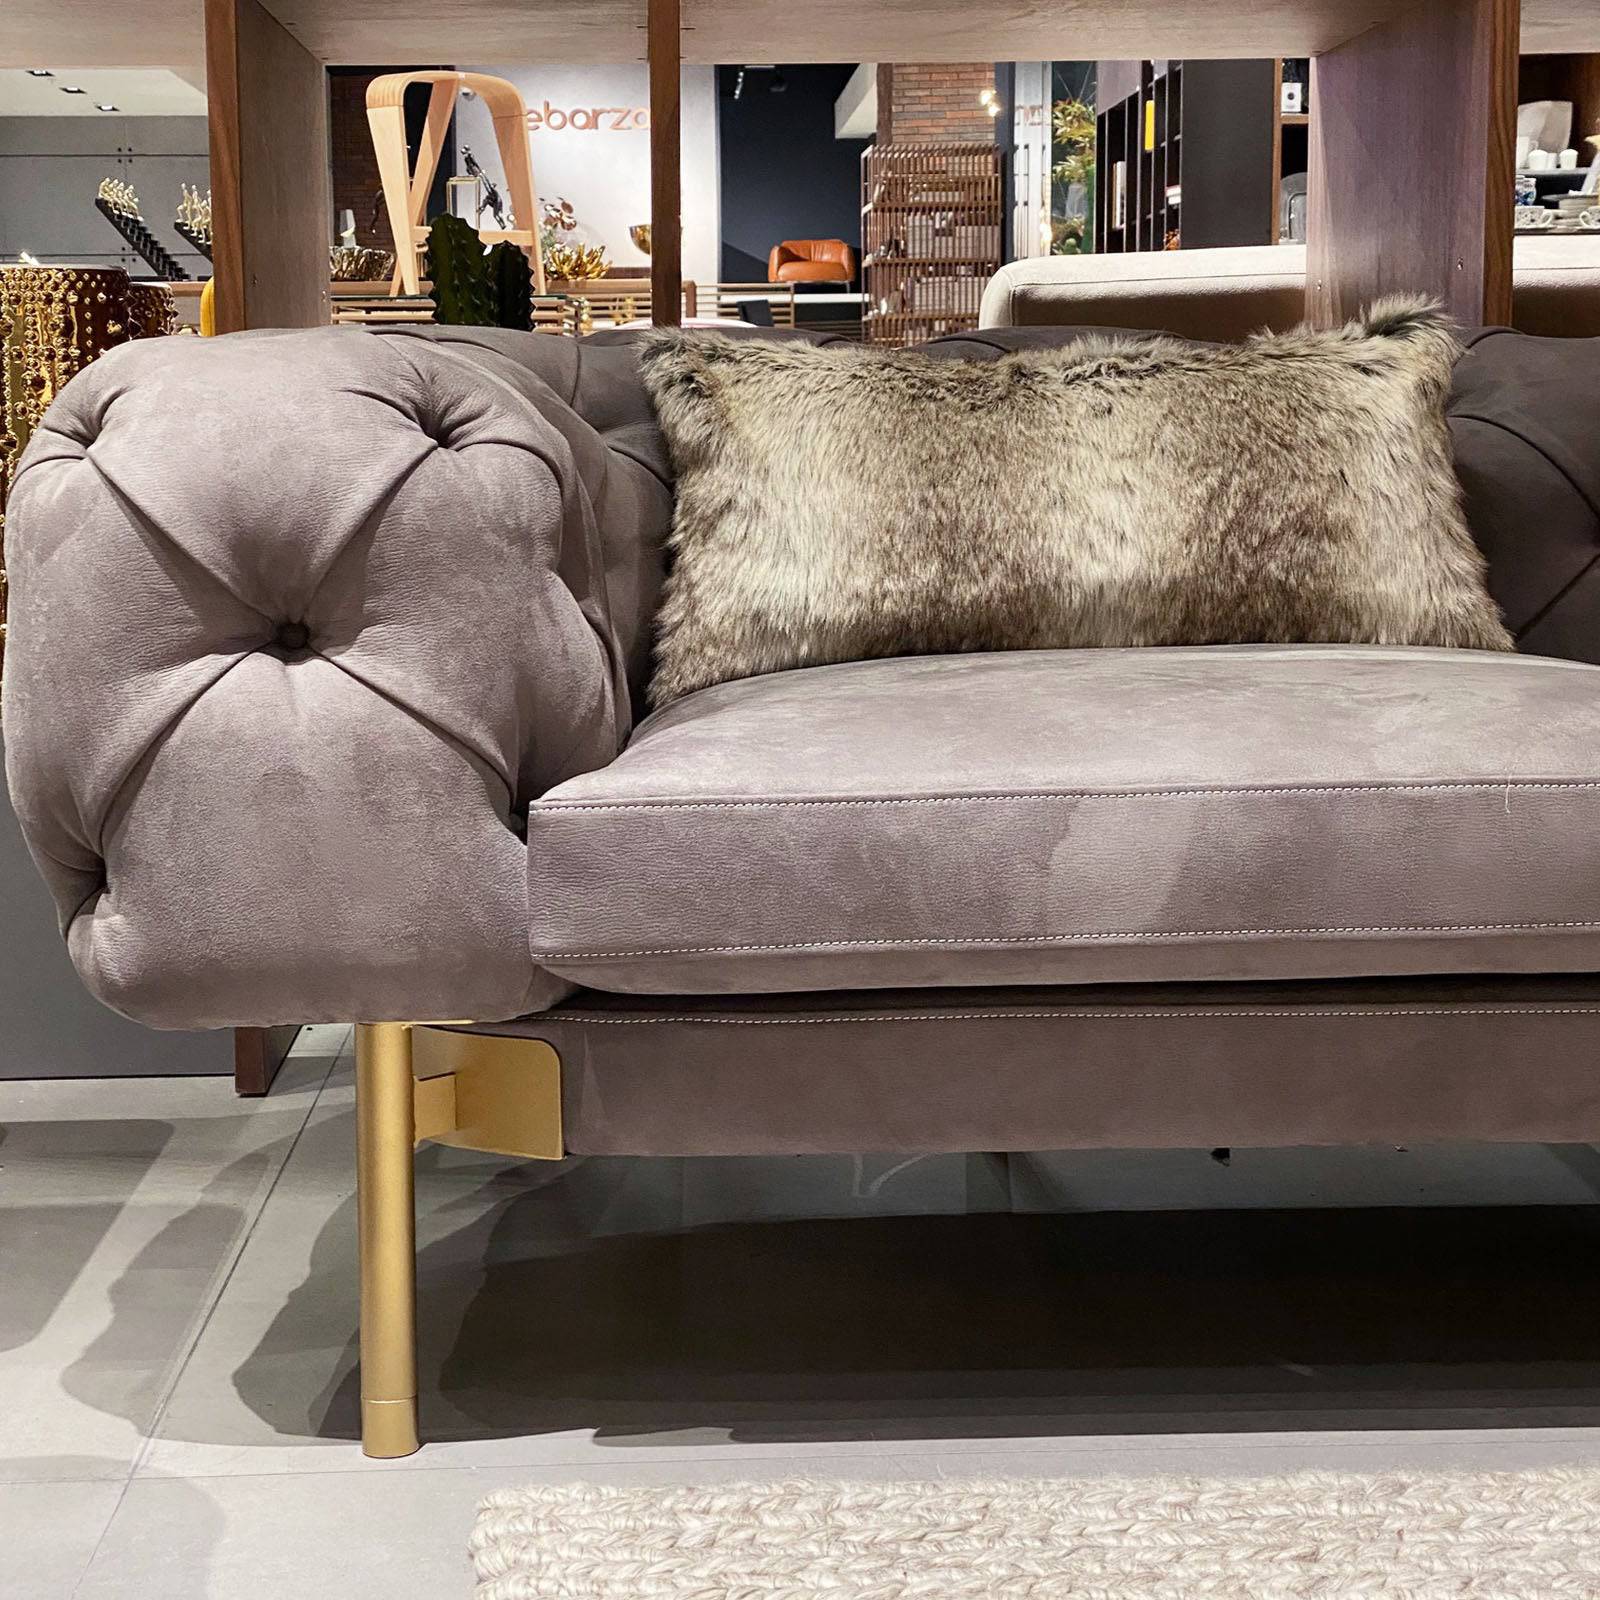 30X60 Cm Cushion Cover 2301-006 -  Cushions | 30X60 غطاء وسادة - ebarza Furniture UAE | Shop Modern Furniture in Abu Dhabi & Dubai - مفروشات ايبازرا في الامارات | تسوق اثاث عصري وديكورات مميزة في دبي وابوظبي